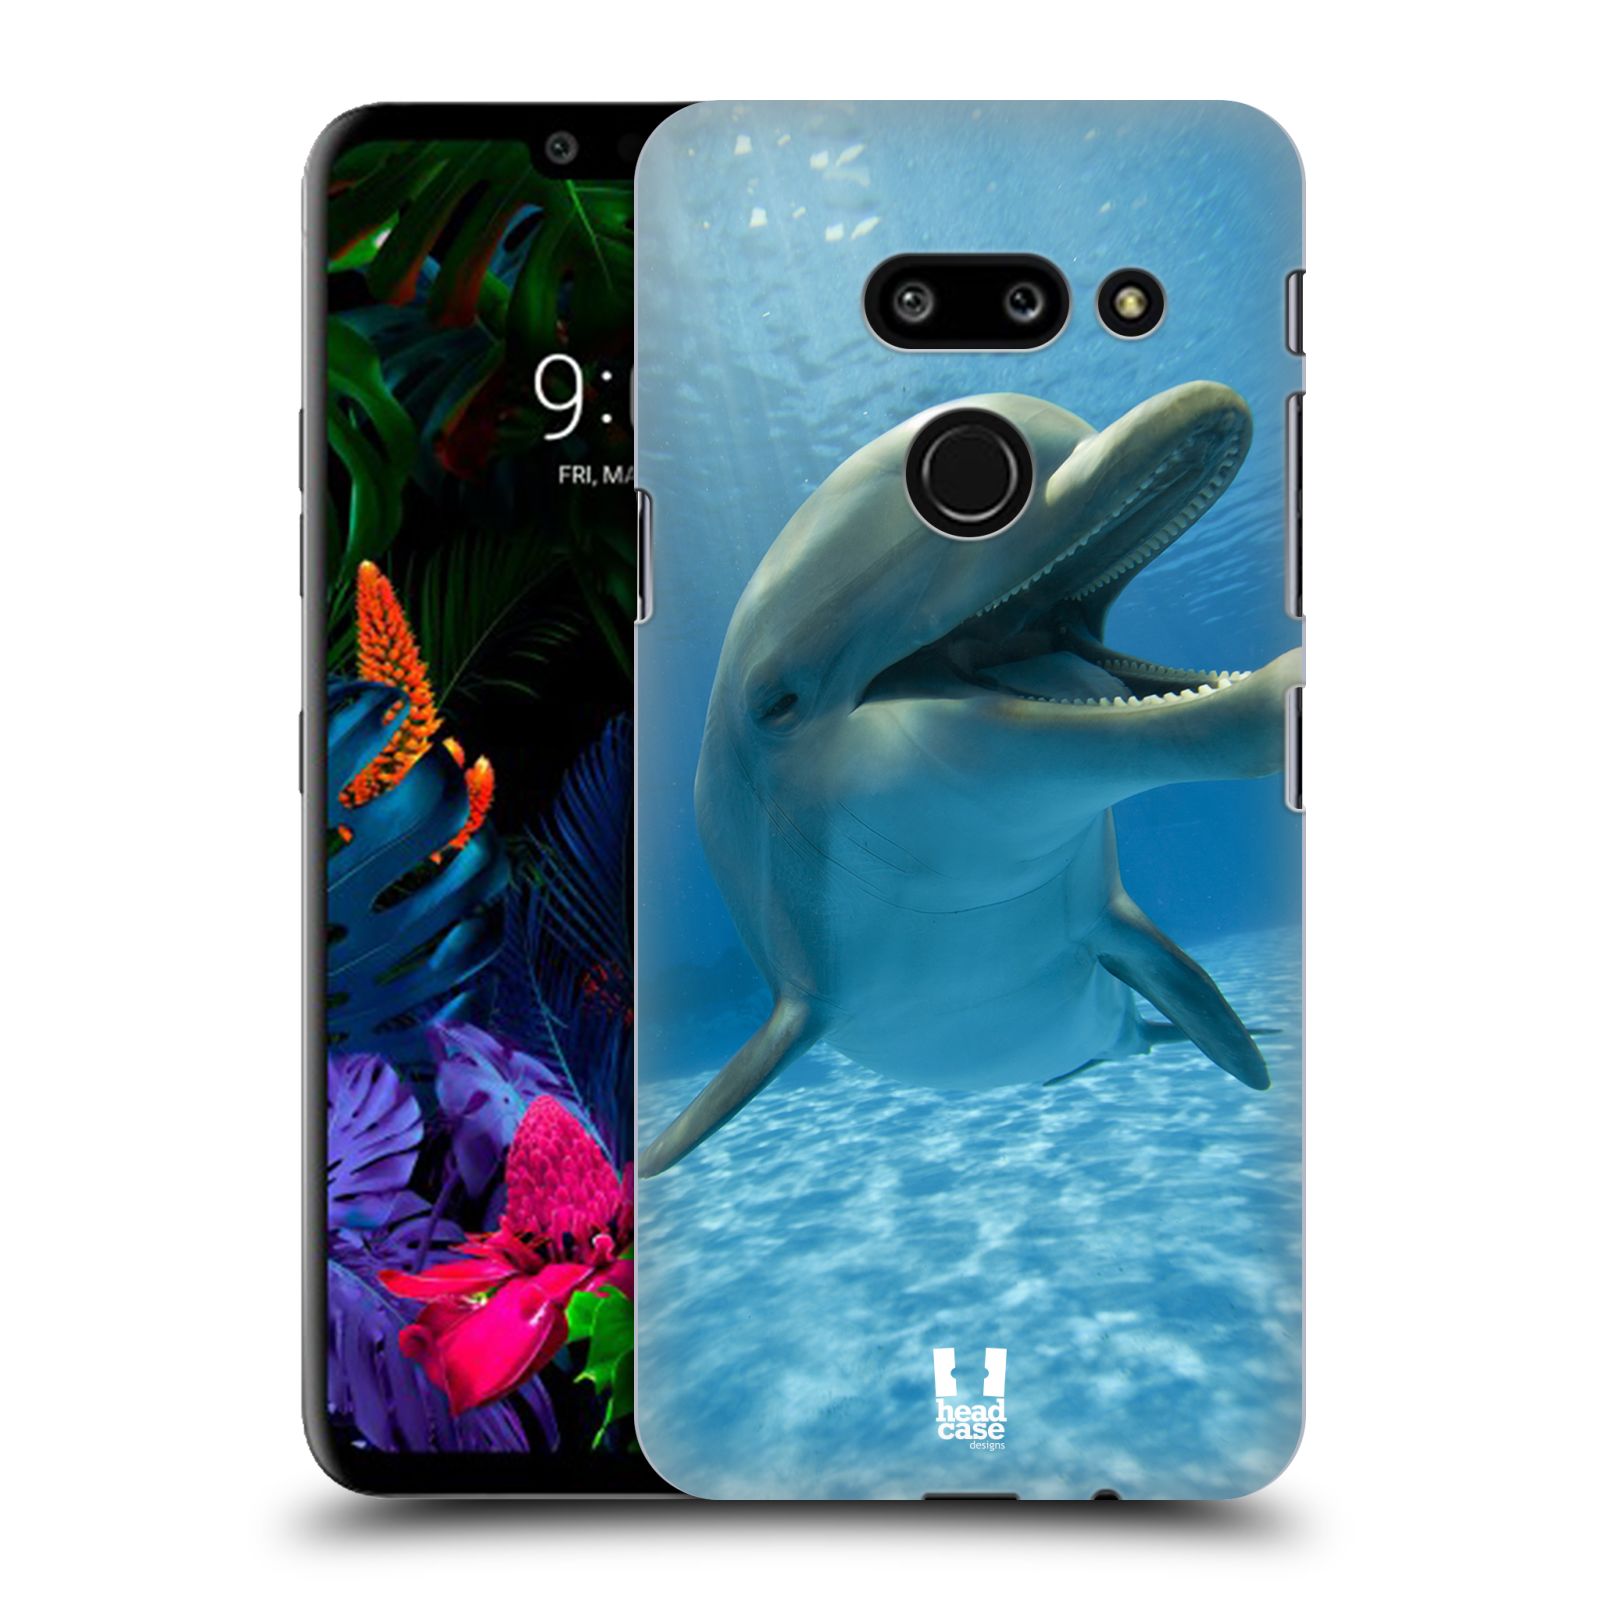 Zadní obal pro mobil LG G8 ThinQ - HEAD CASE - Svět zvířat delfín v moři